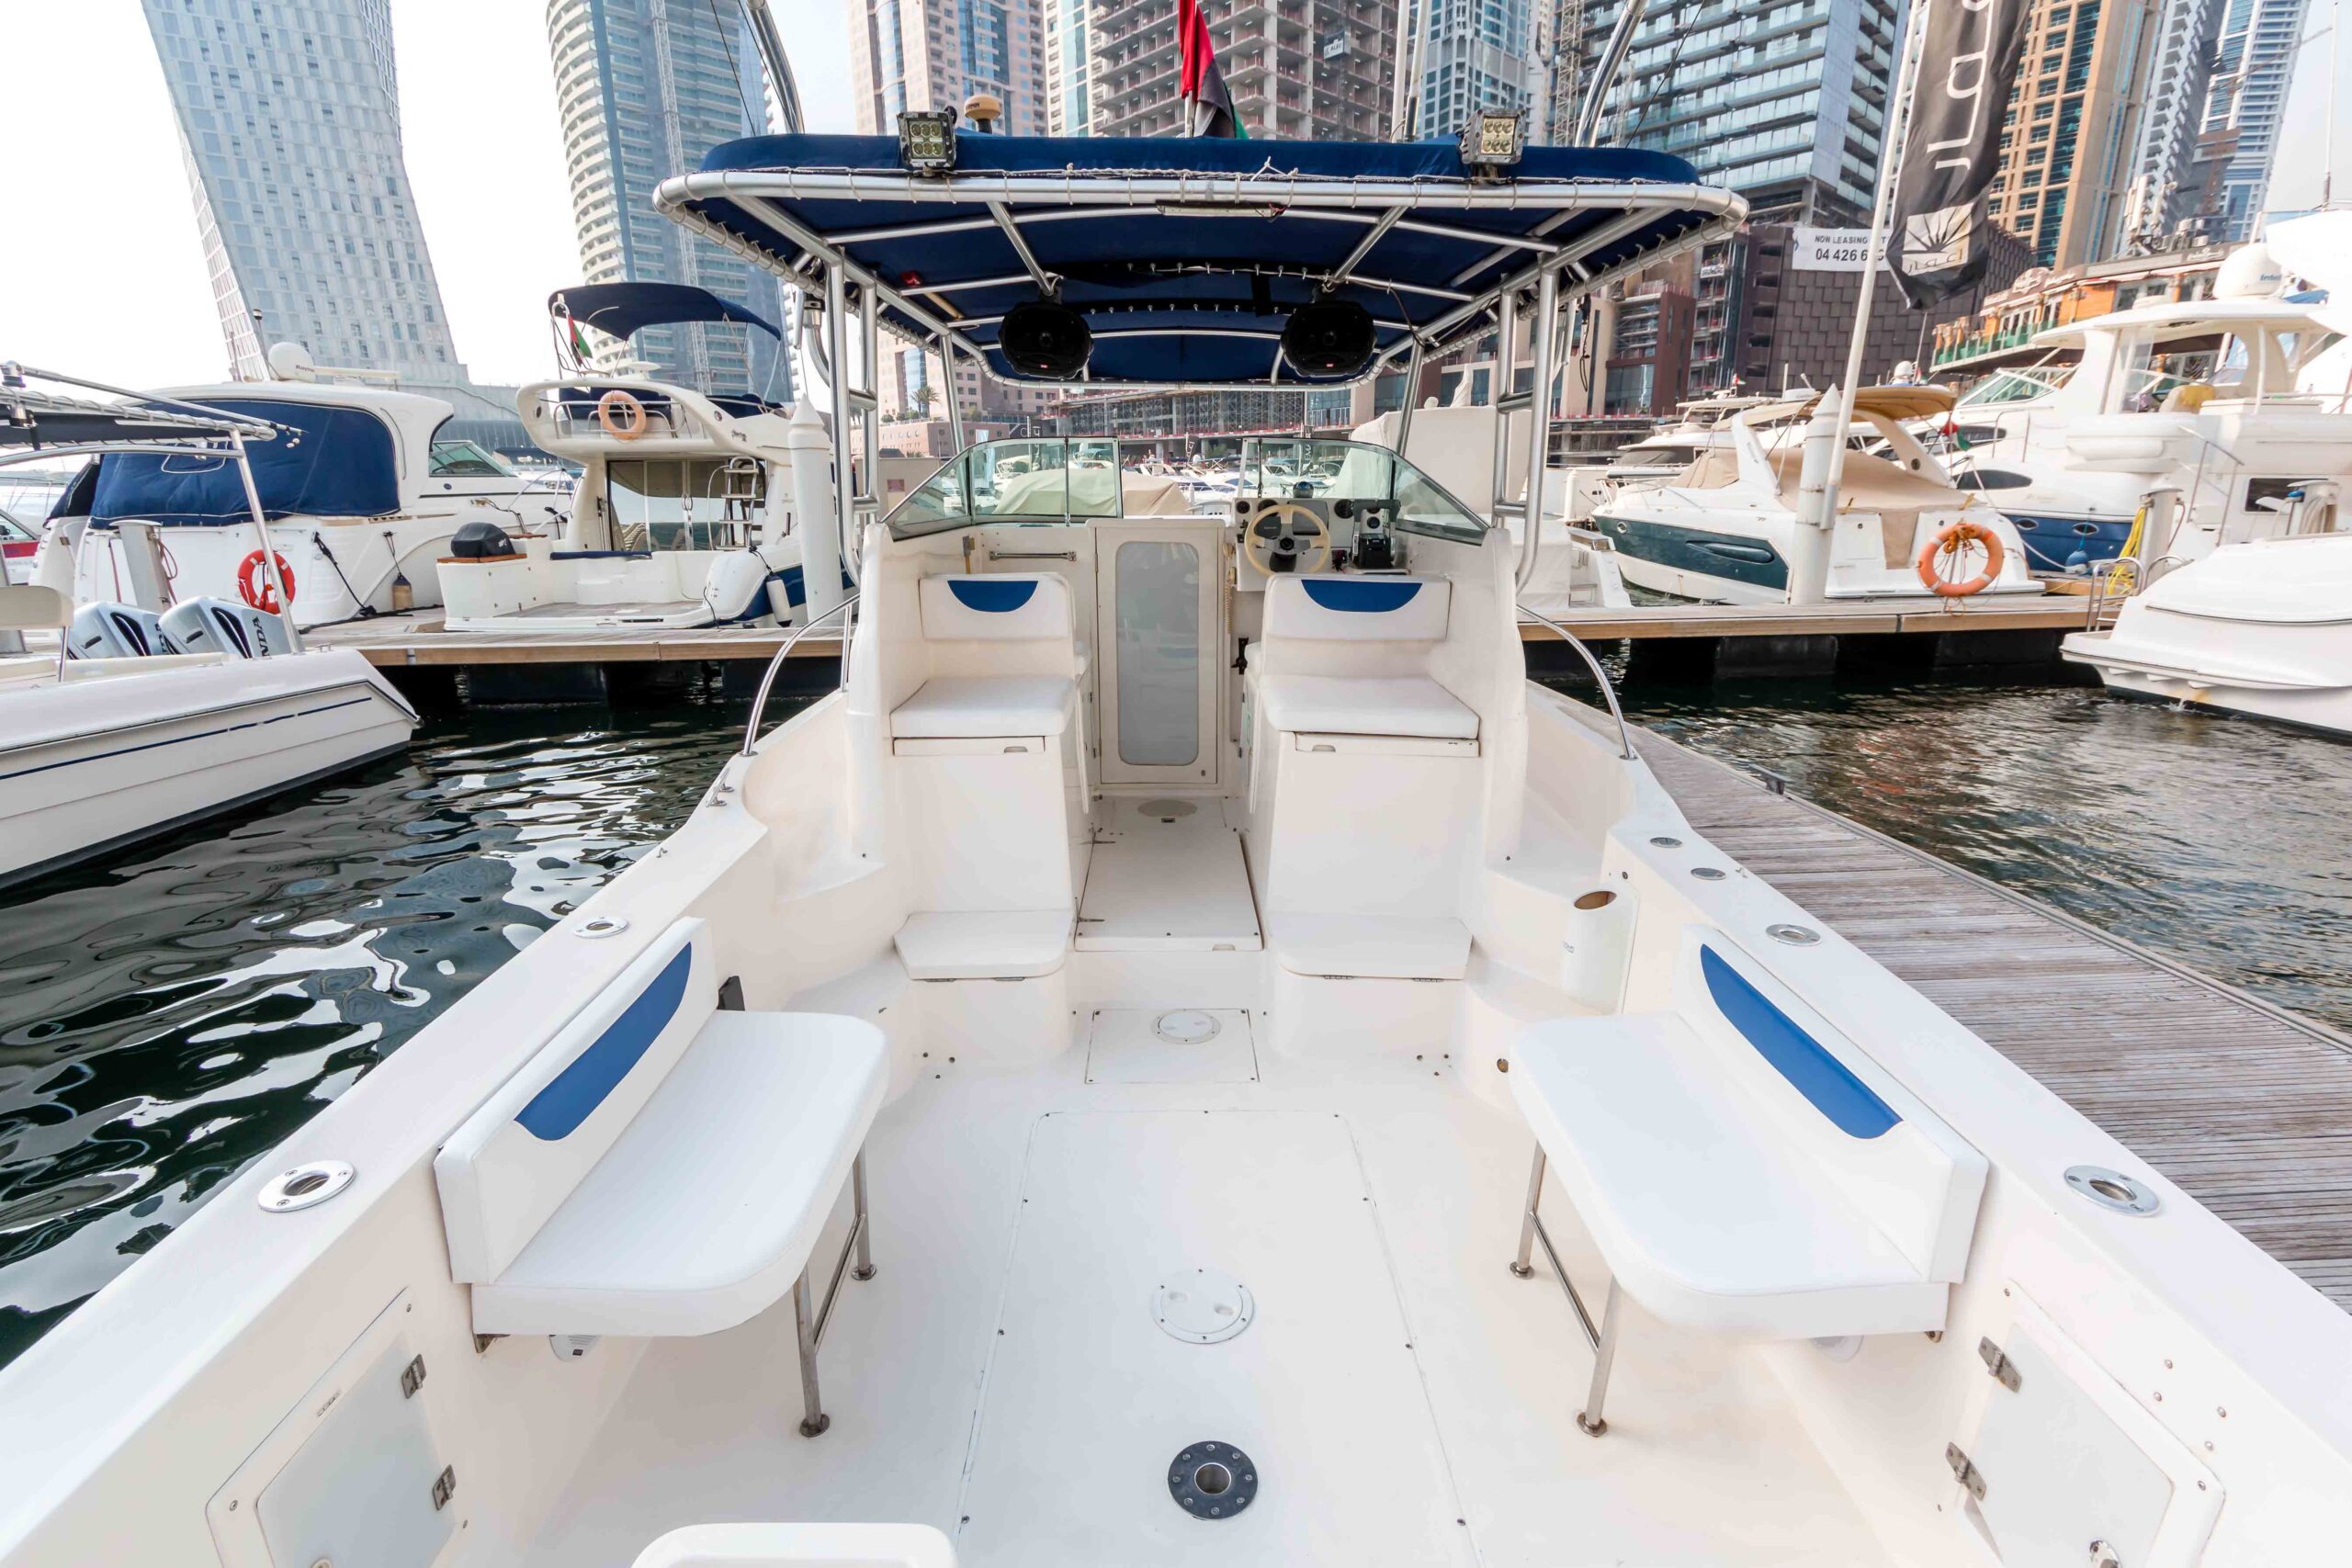 Explorer Goldeon Quest 31 ft. yacht booking Dubai